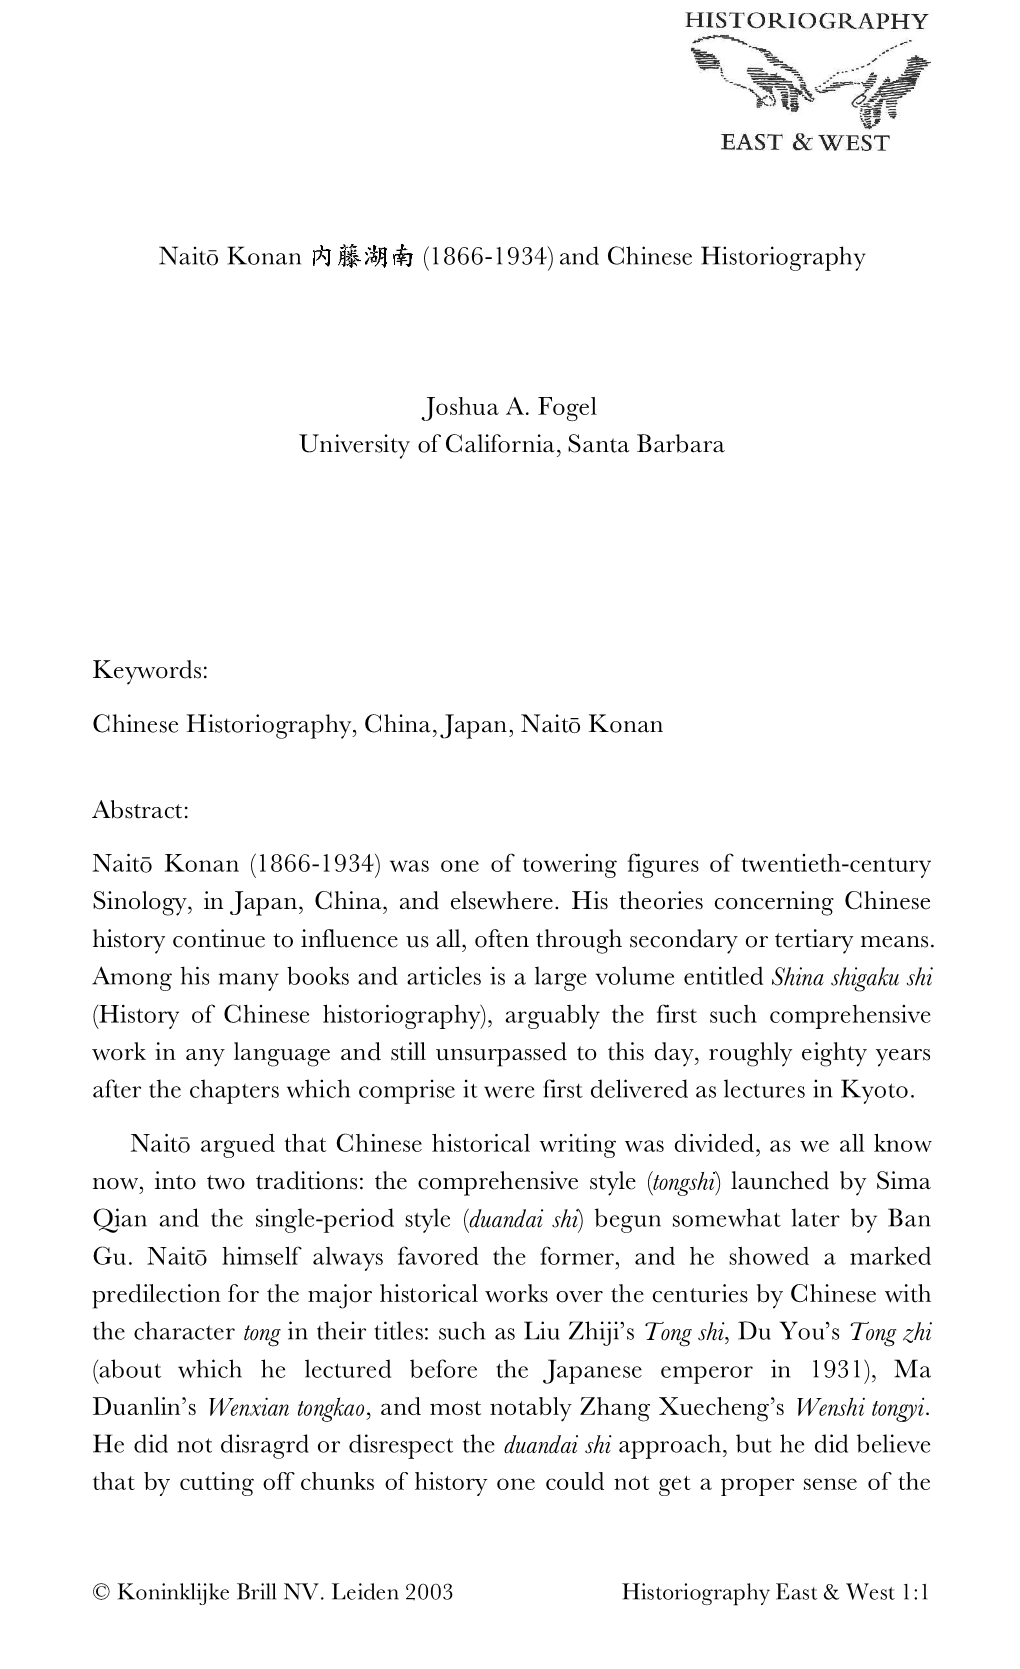 Naito Konan (1866-1934) and Chinese Historiography